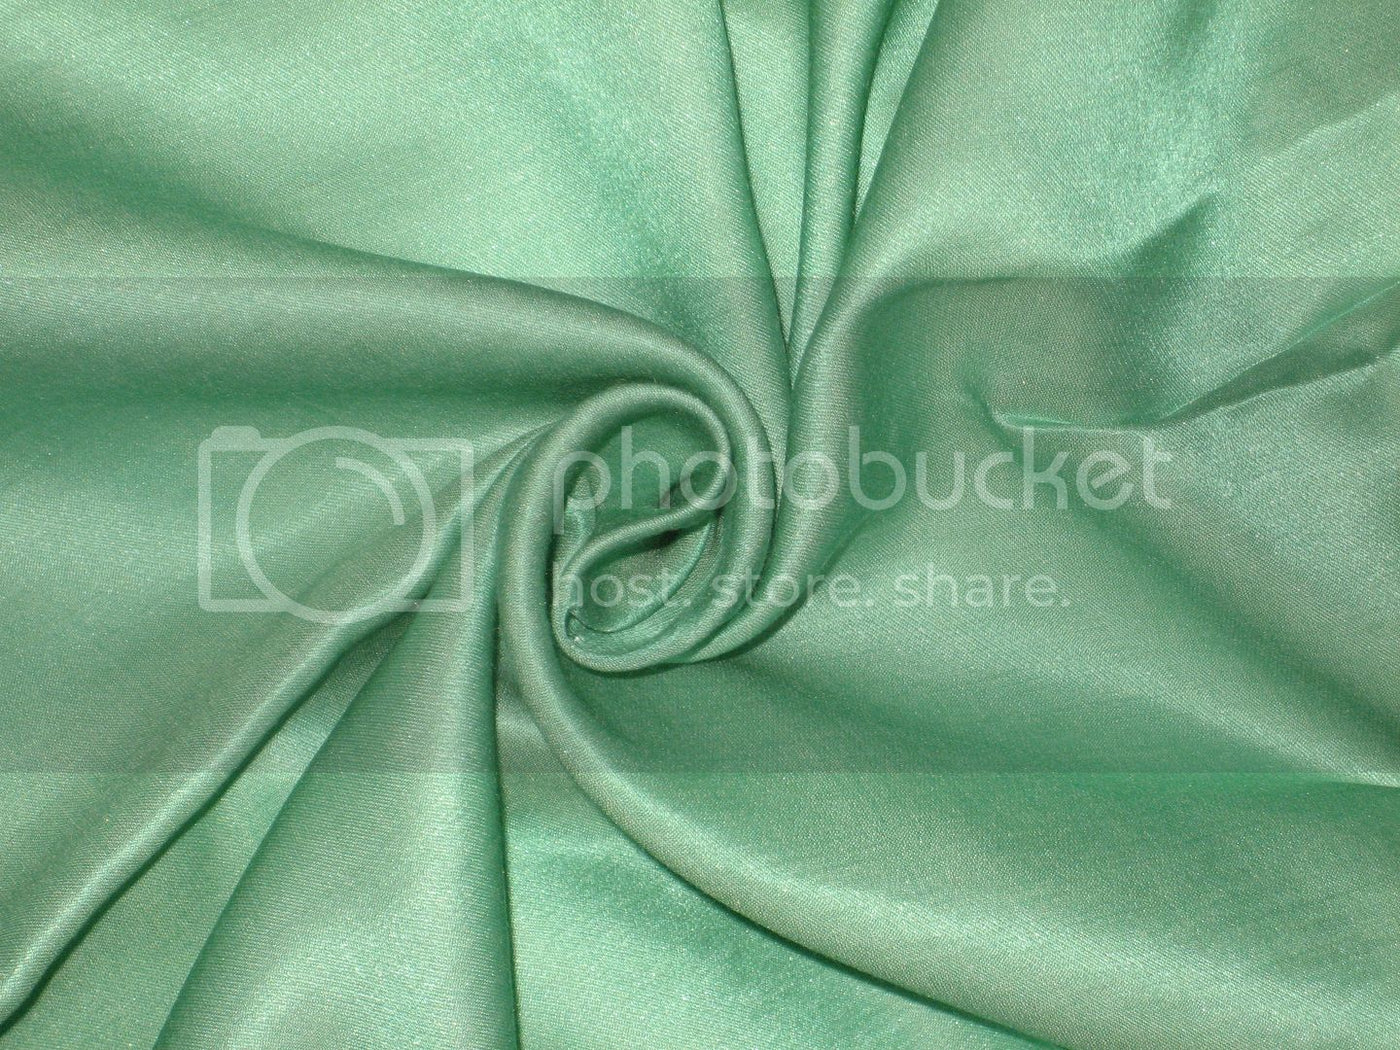 Loro Piana~dyed silk / viscose satin fabric 44